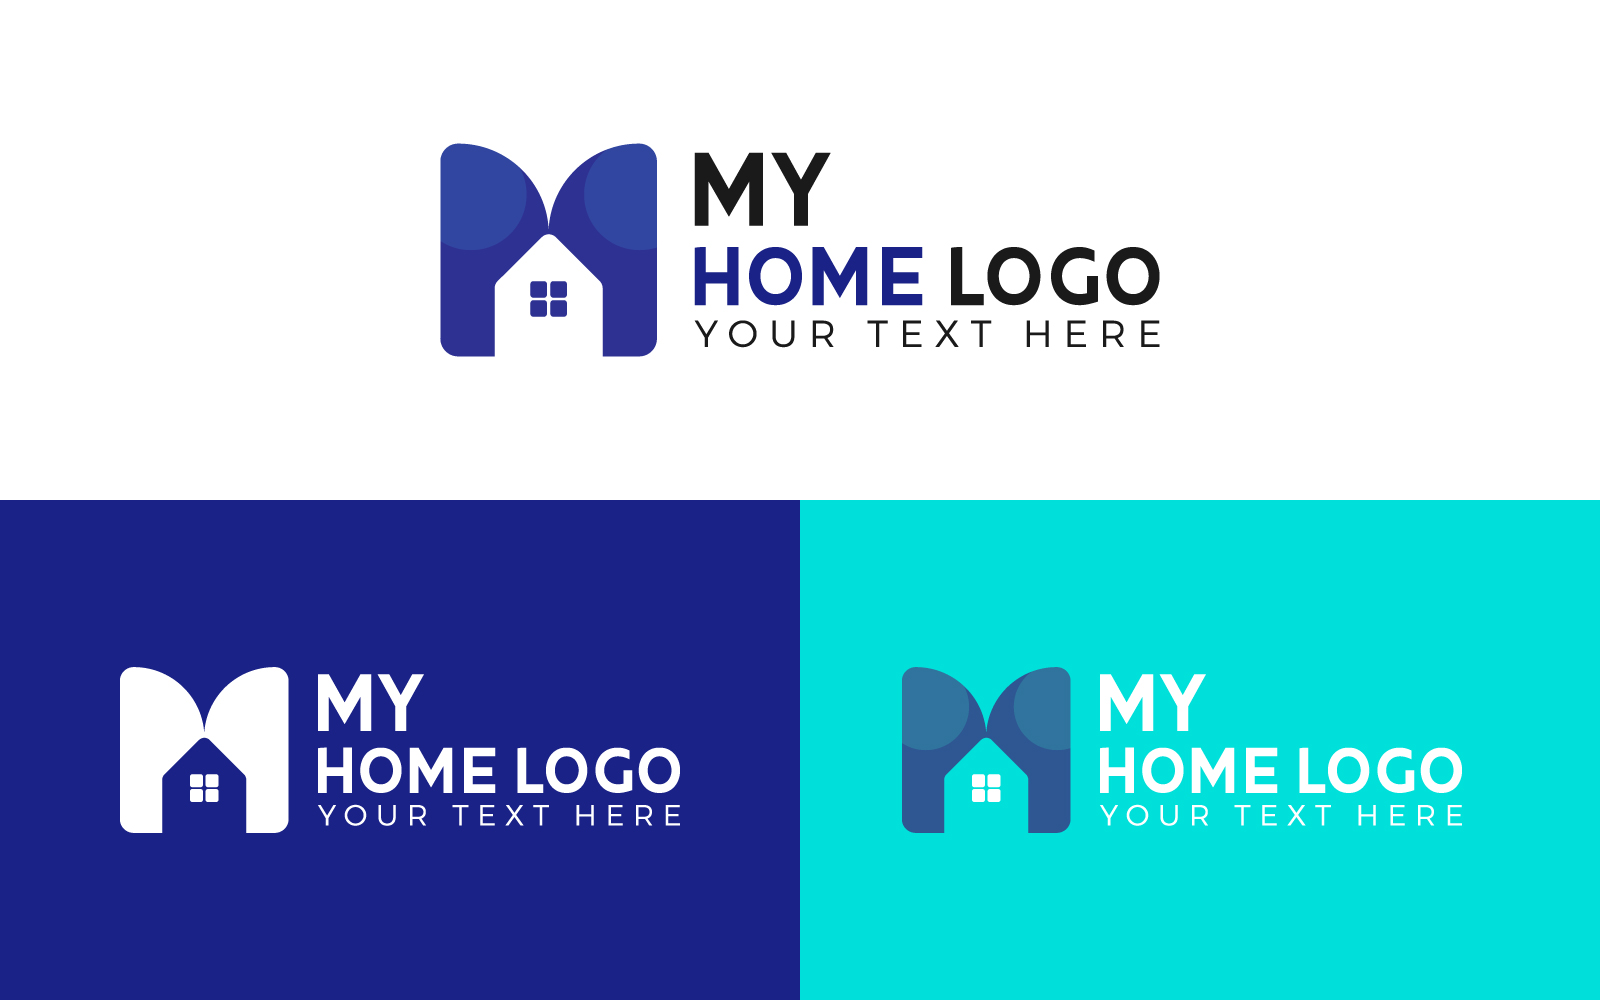 Vector Home Logo presentation